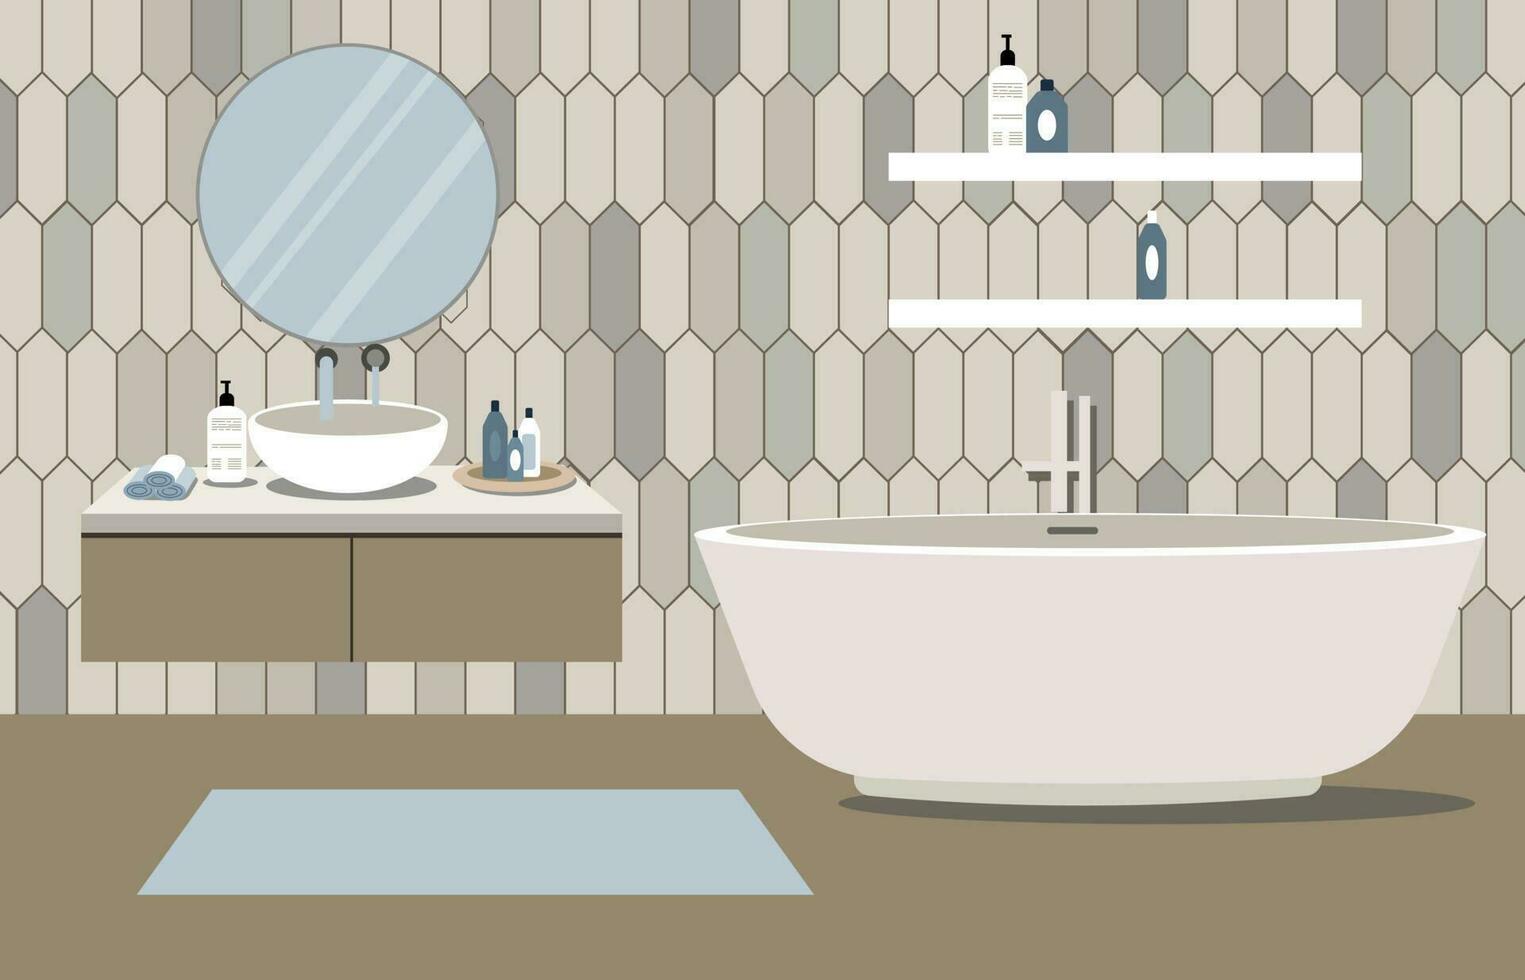 moderno baño con mueble. acogedor baño interior en pastel colores. vector ilustración en plano estilo